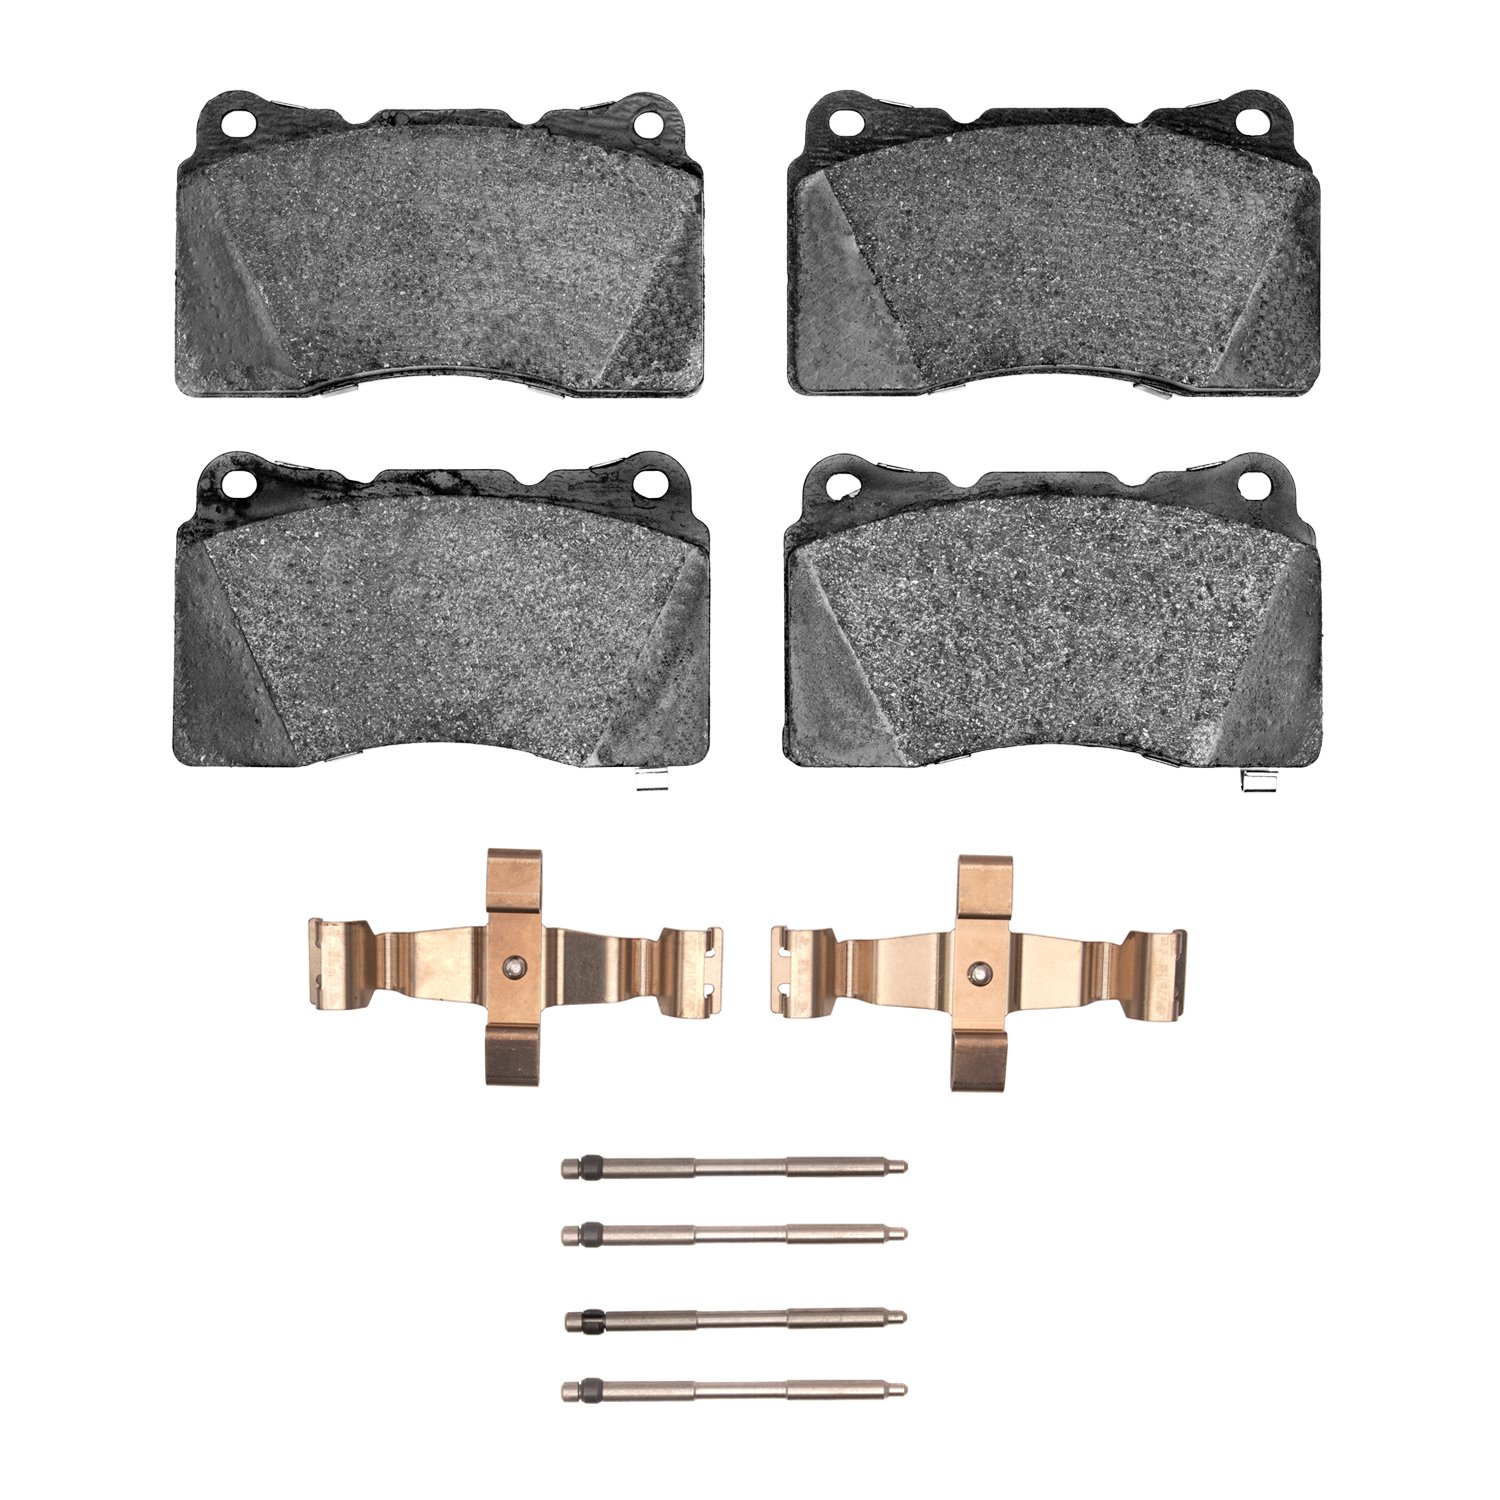 1551-1001-03 5000 Advanced Low-Metallic Brake Pads & Hardware Kit, 2016-2020 GM, Position: Front